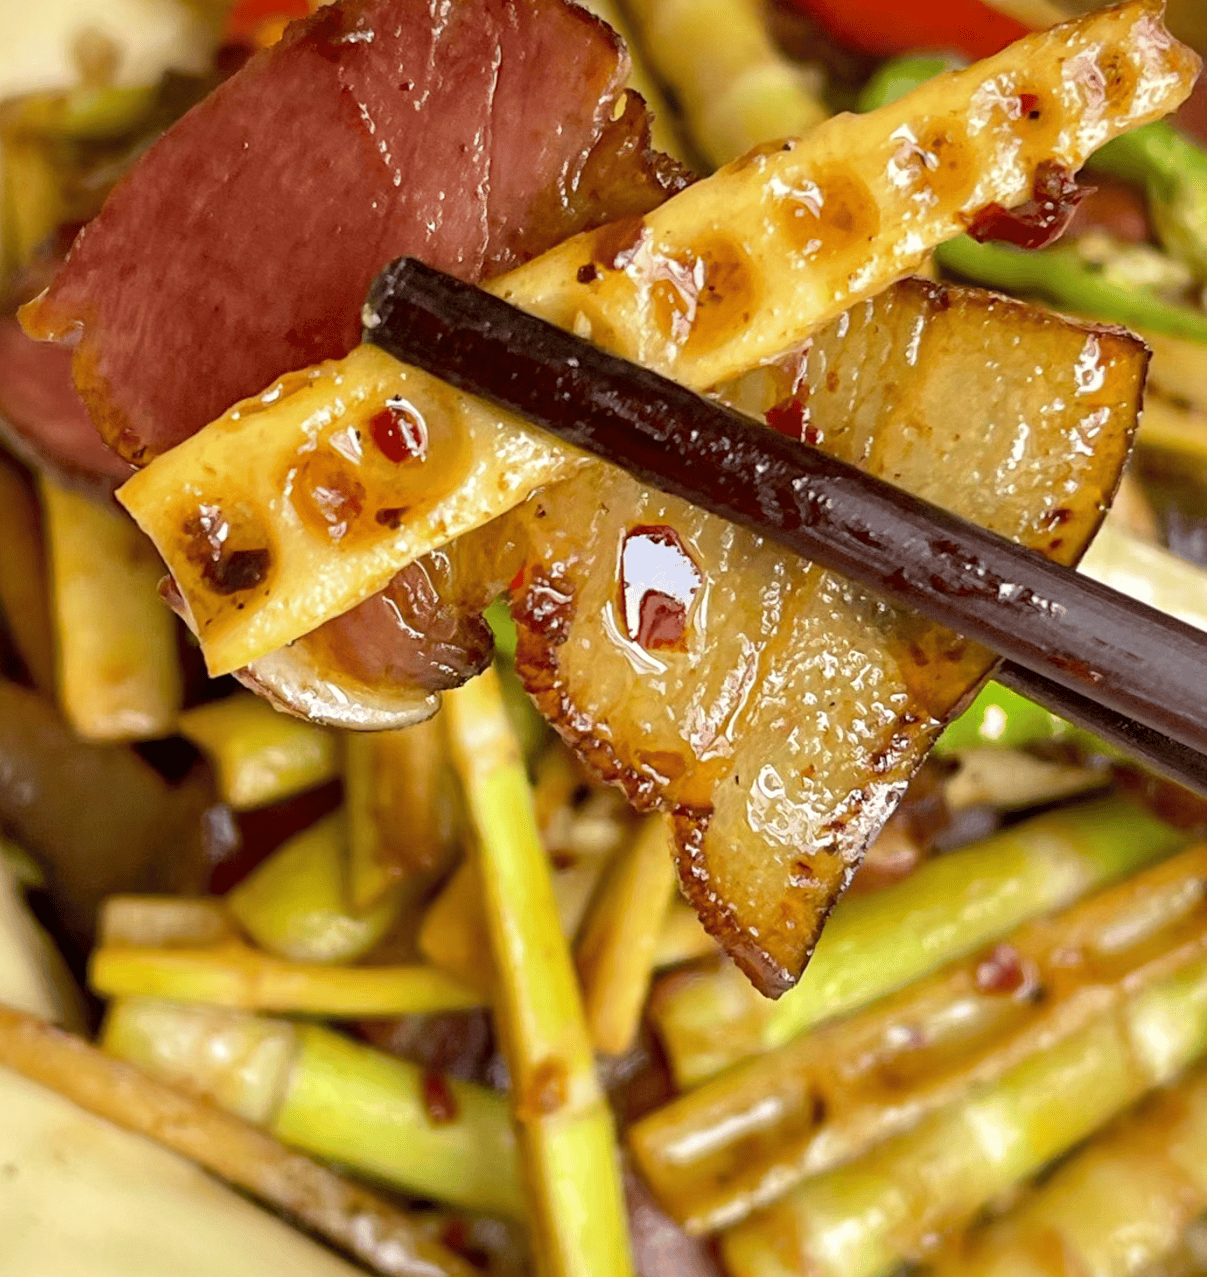 竹笋炒腊肉:家常佳肴的味蕾盛宴